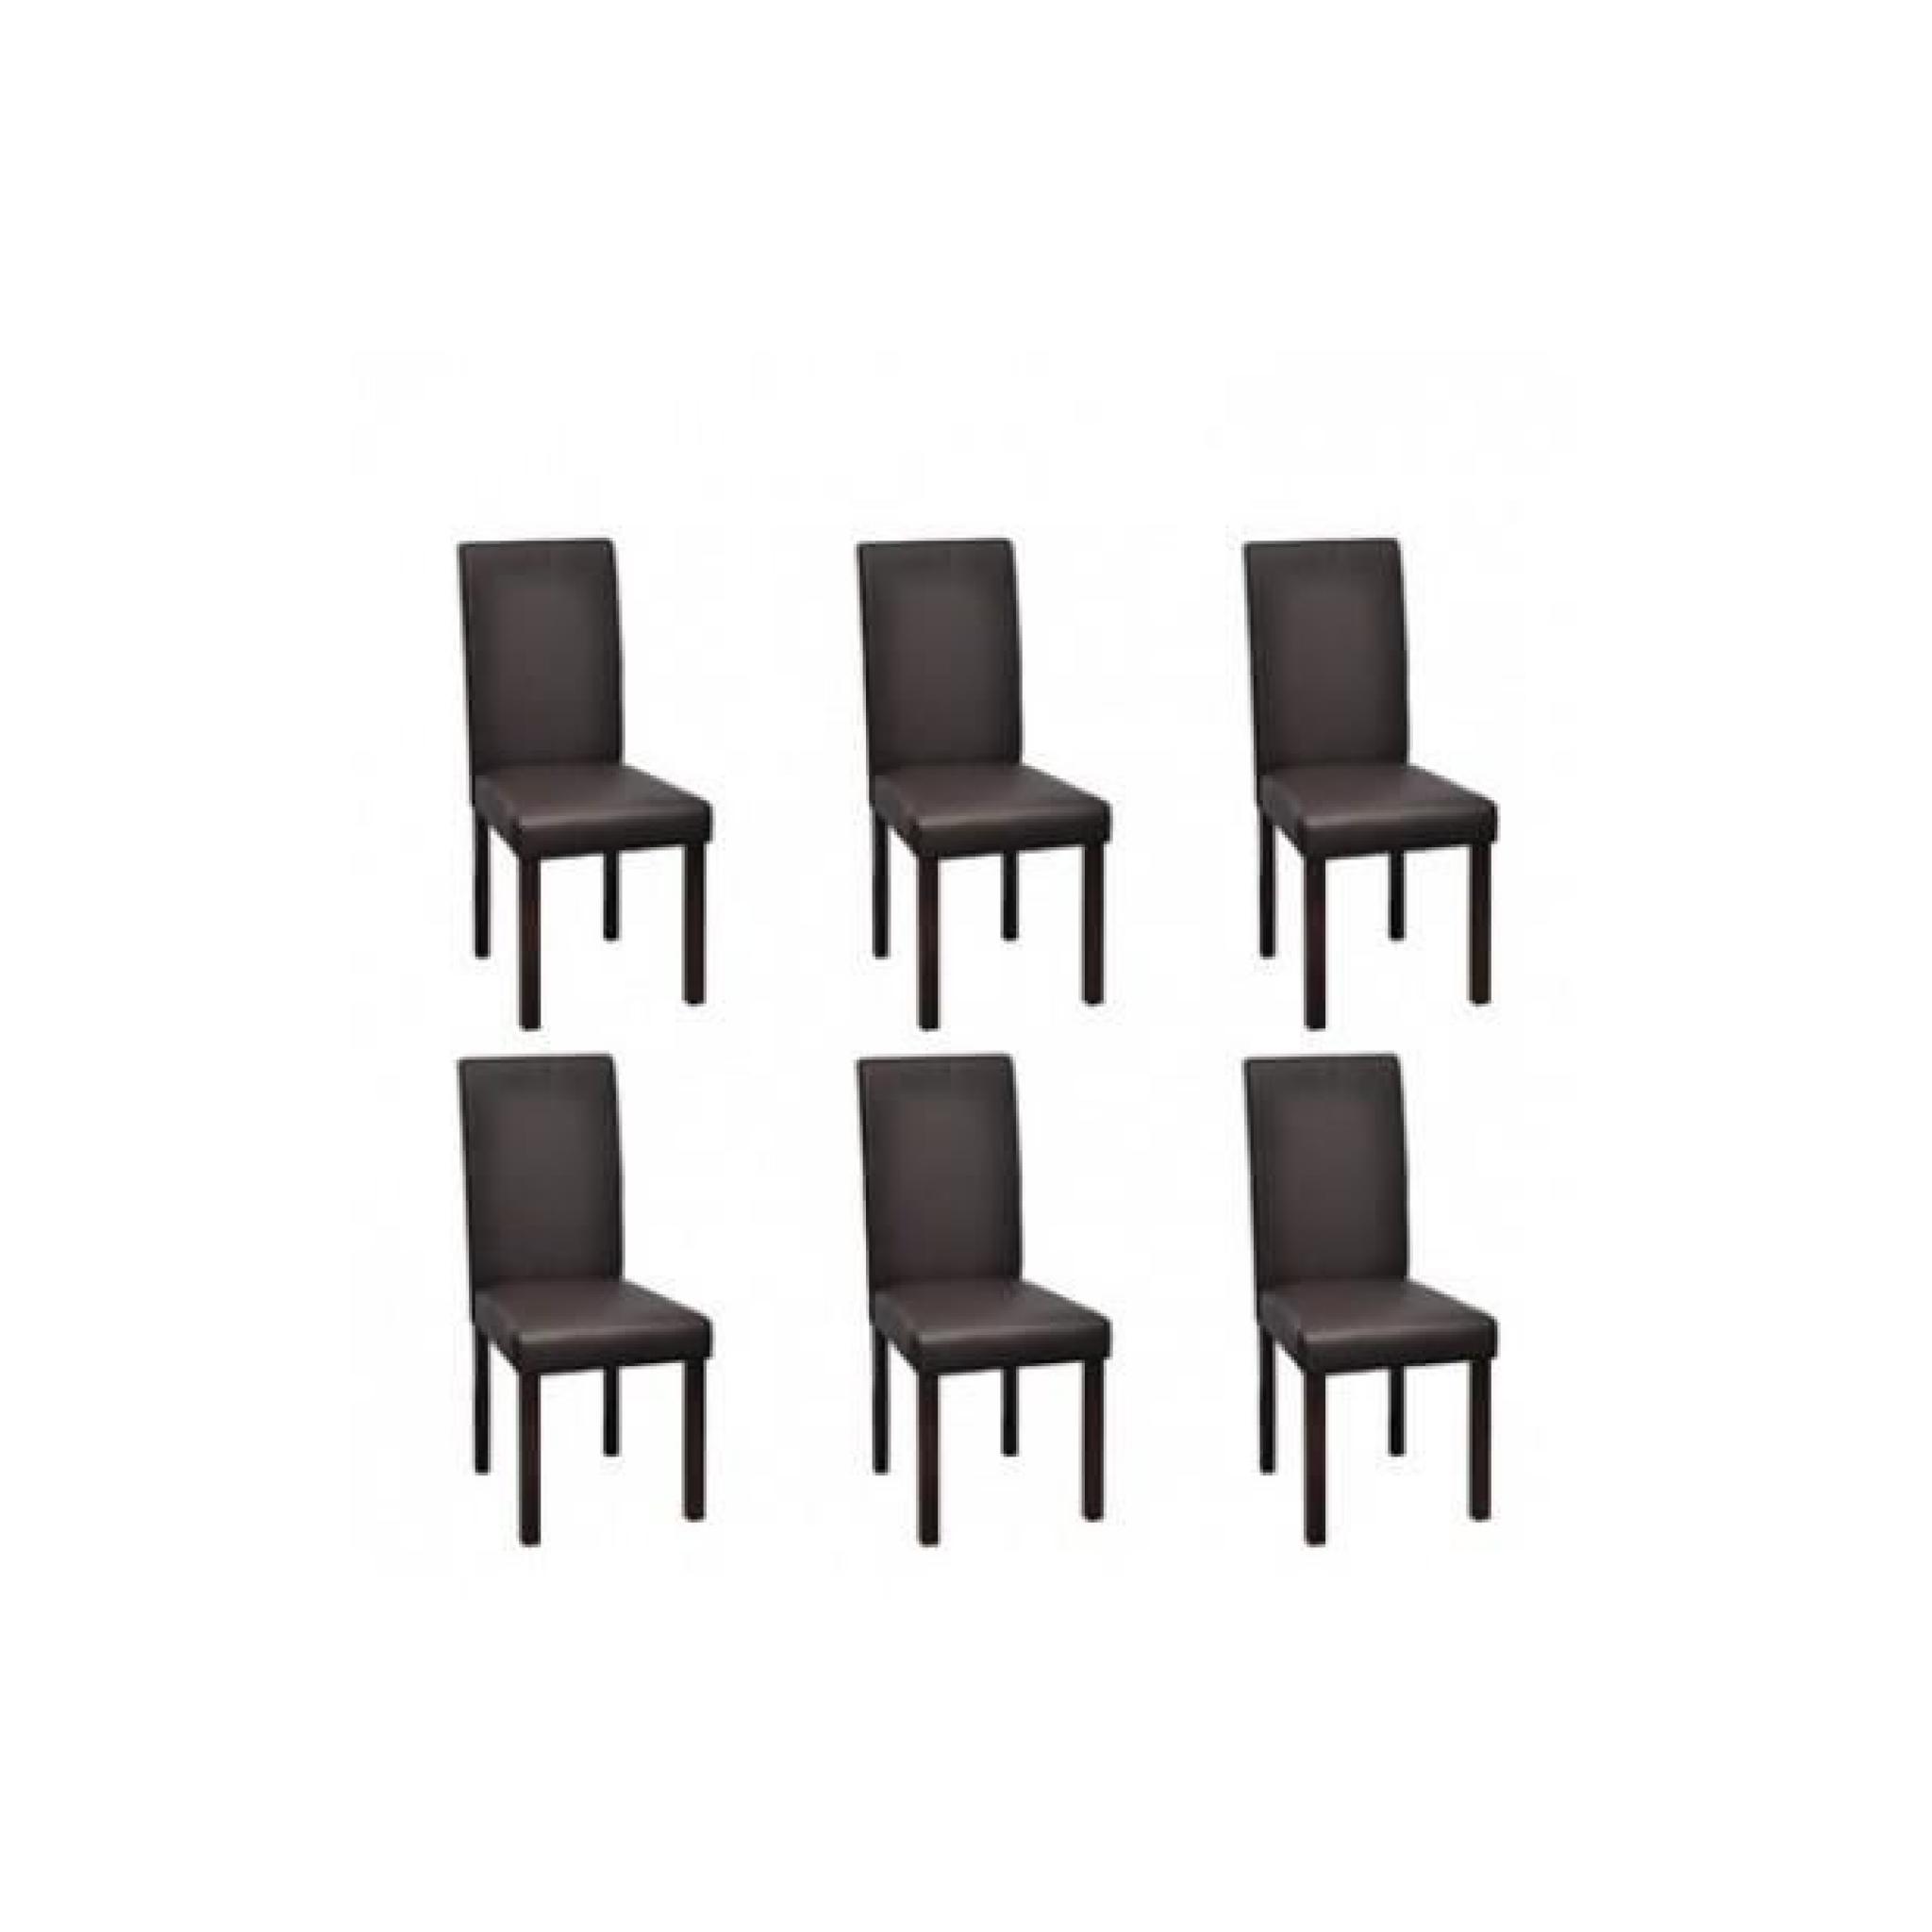 Superbe Chaise en cuir design colonial marron bois (lot de 6)  